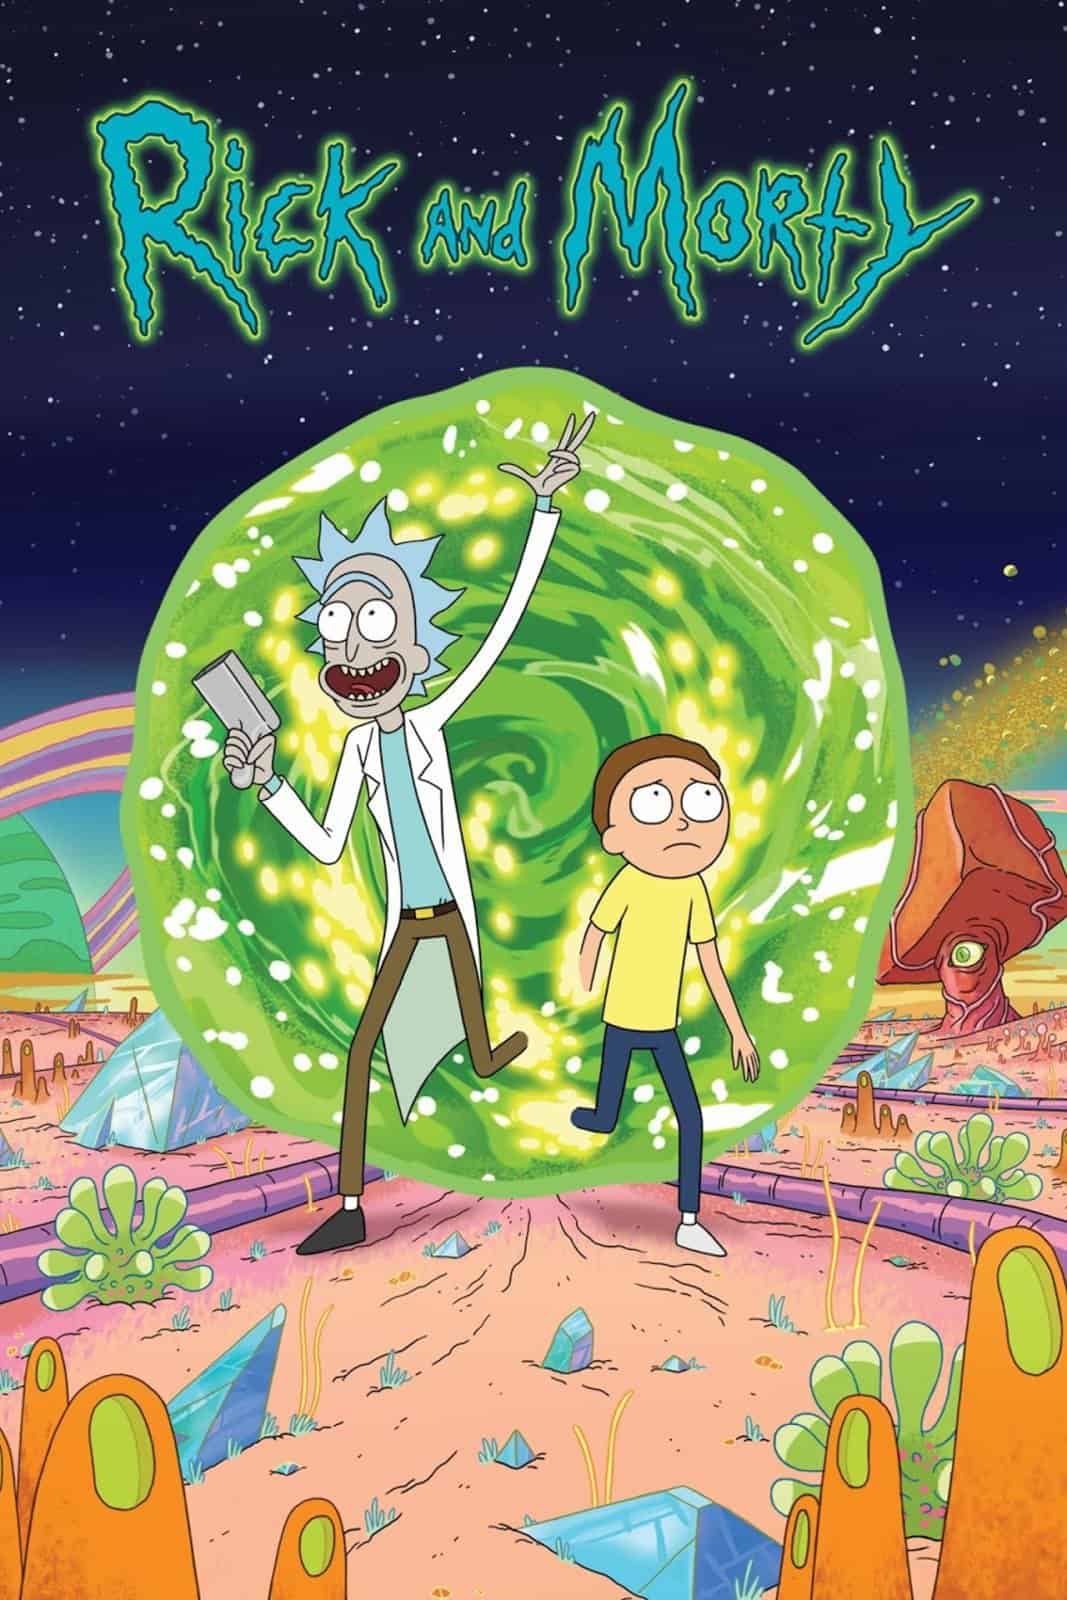 Confermato il ritorno di Rick e Morty!